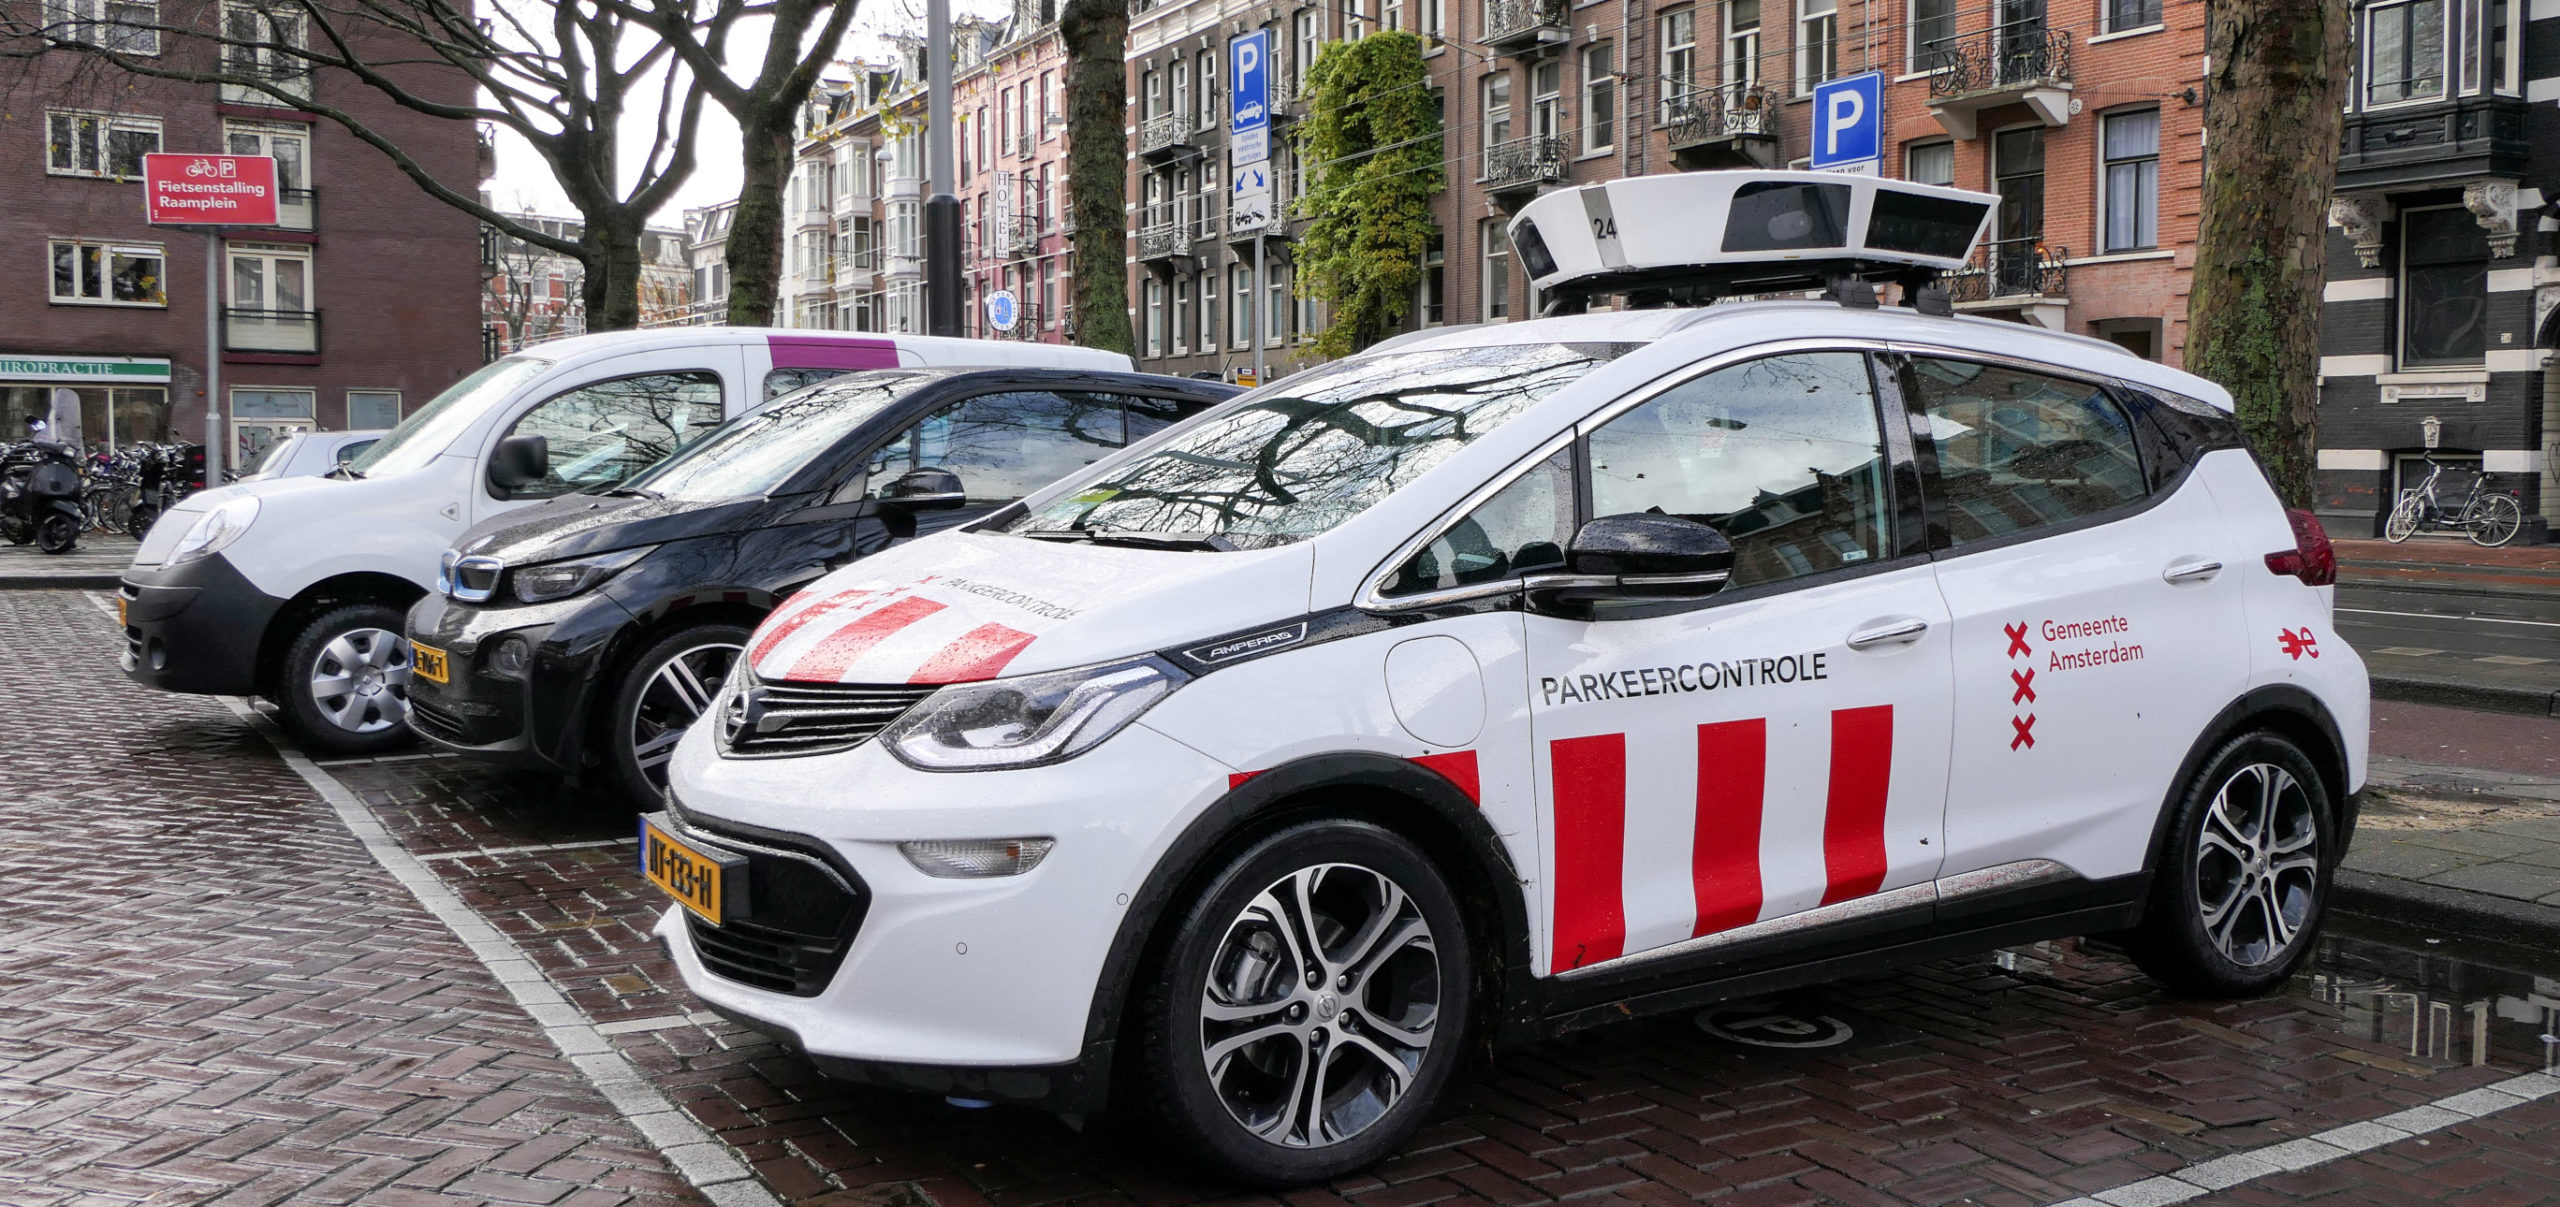 helemaal wij Controverse Parkeercontrole – Amsterdam Algoritmeregister